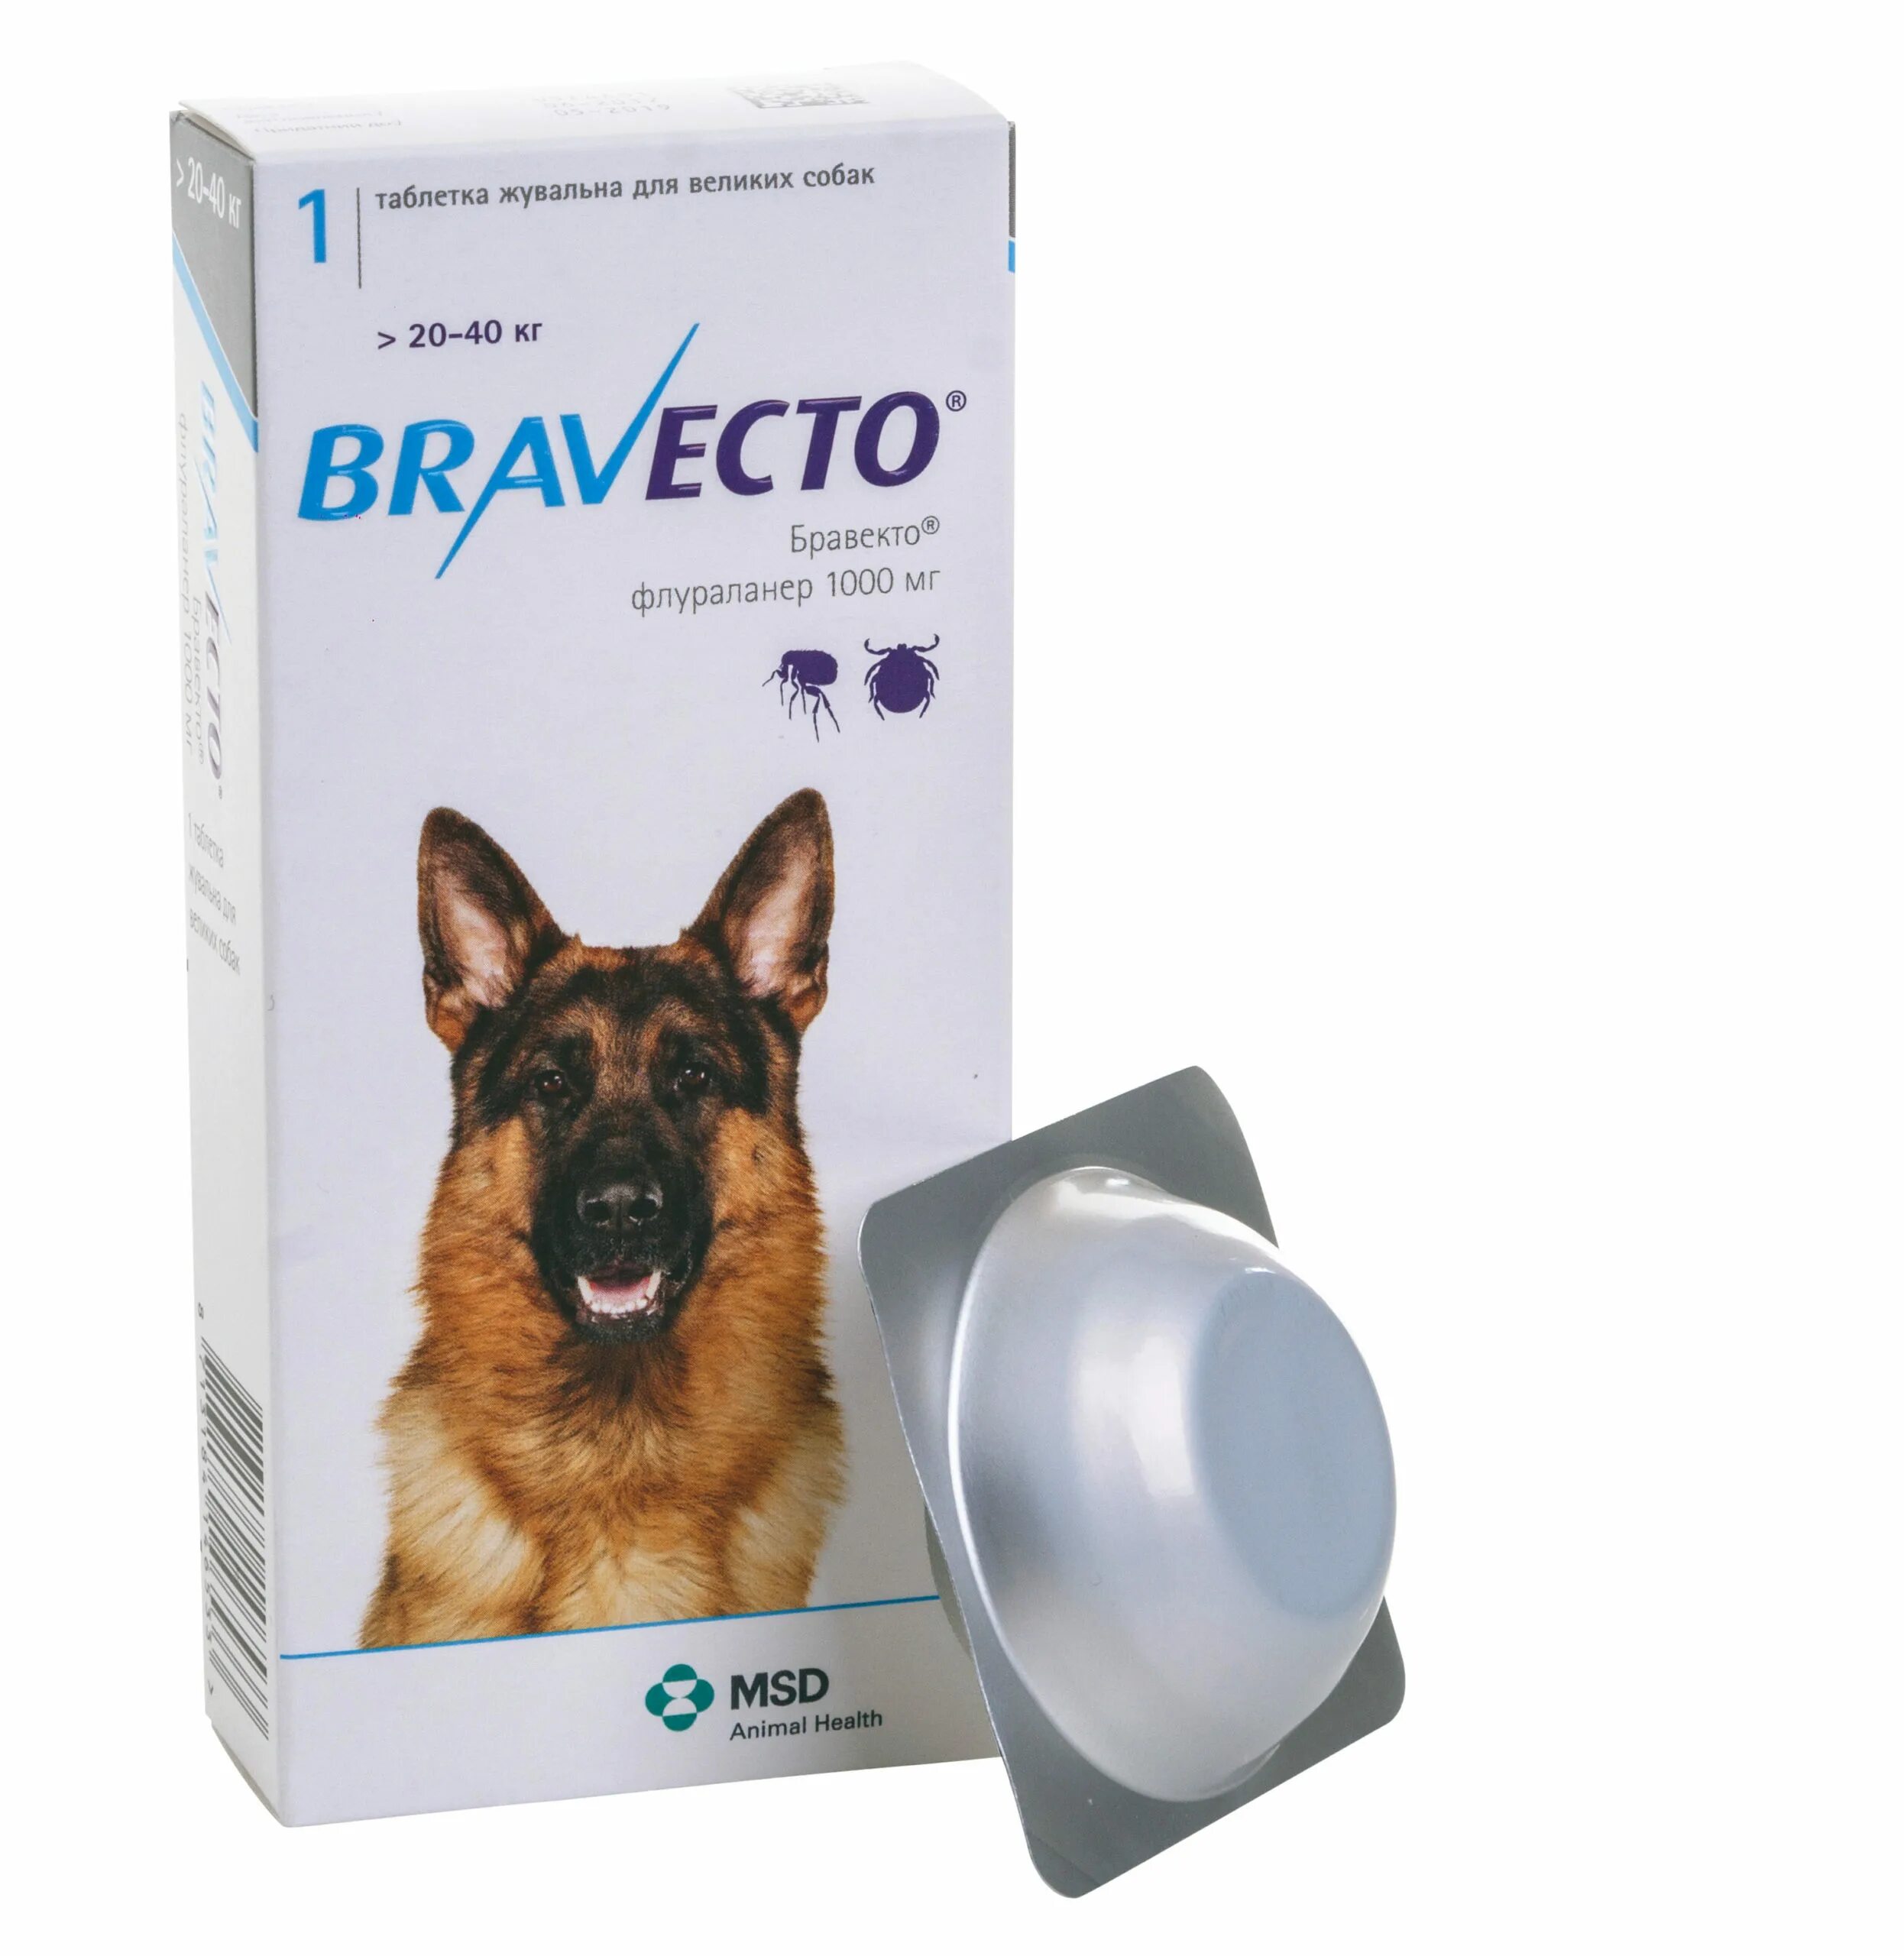 Бравекто для собак 20-40 кг таблетки. Бравекто (Bravecto) 20-40 кг, таблетка 1000 мг. Таблетки от клещей для собак Бравекто. Бравекто 112.5 мг Флураланер.